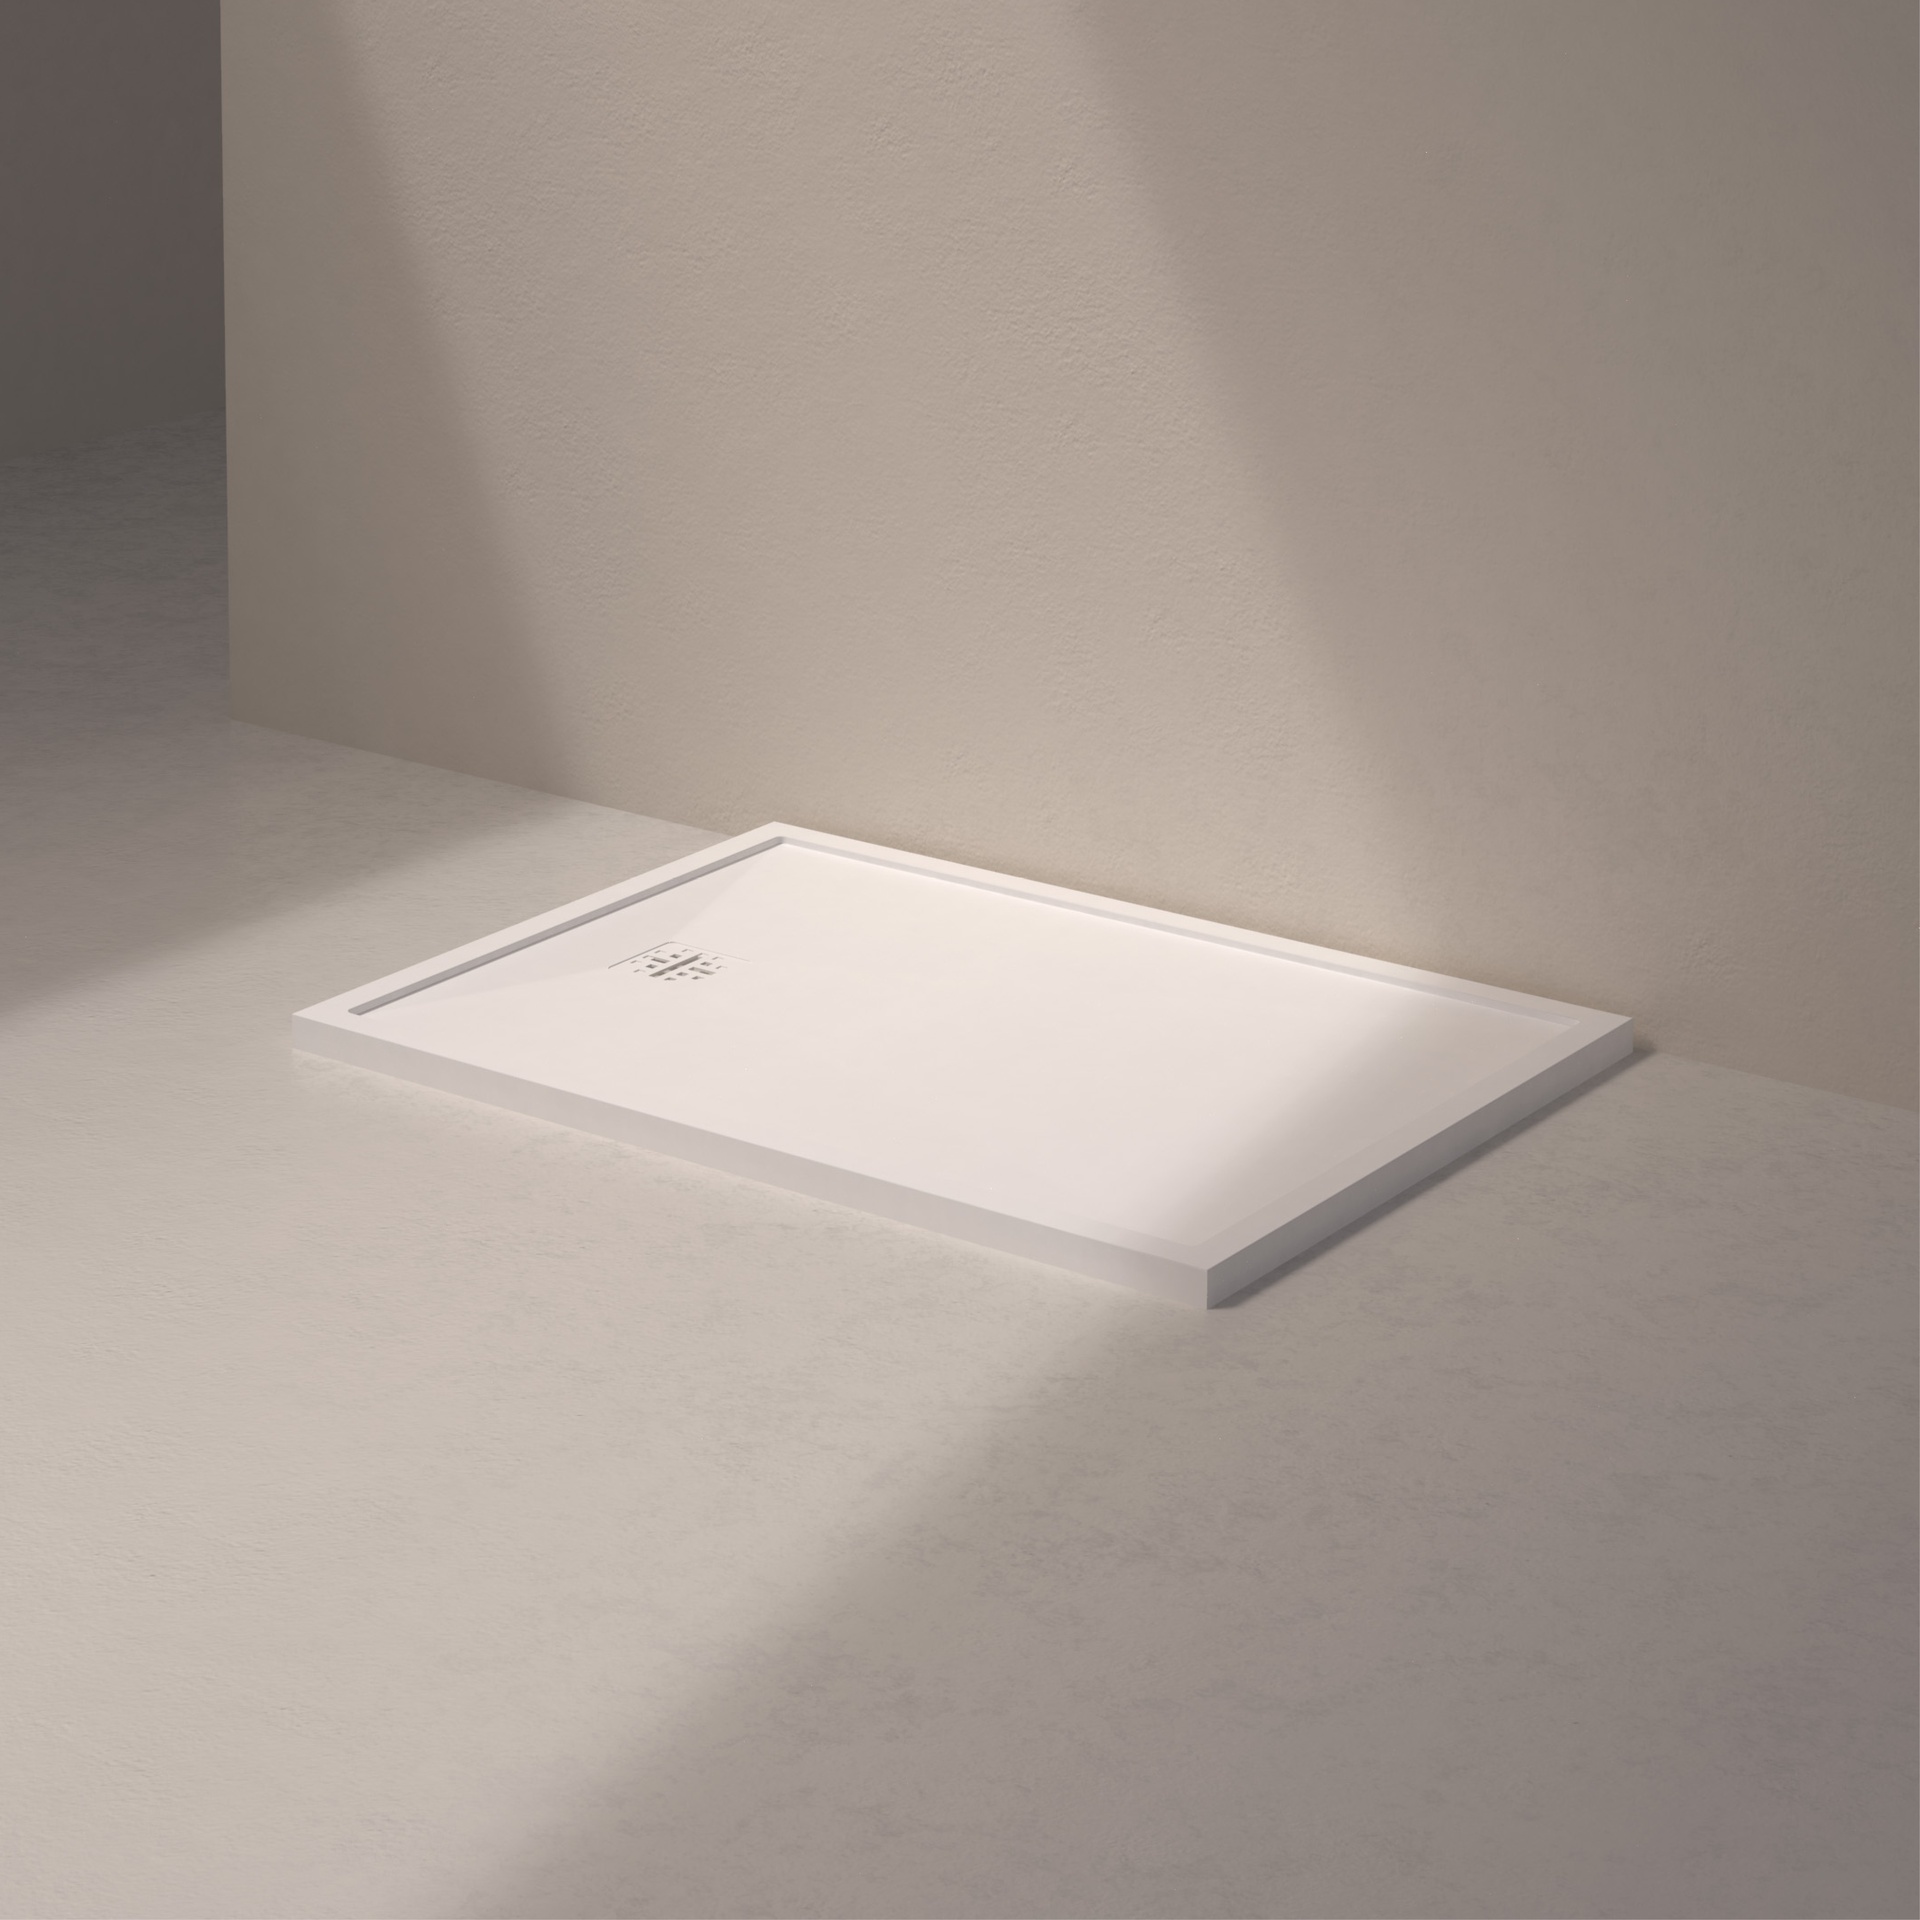 [MSTES90120-WHITE] Mist shower floor short side drain (120x90, stone white)